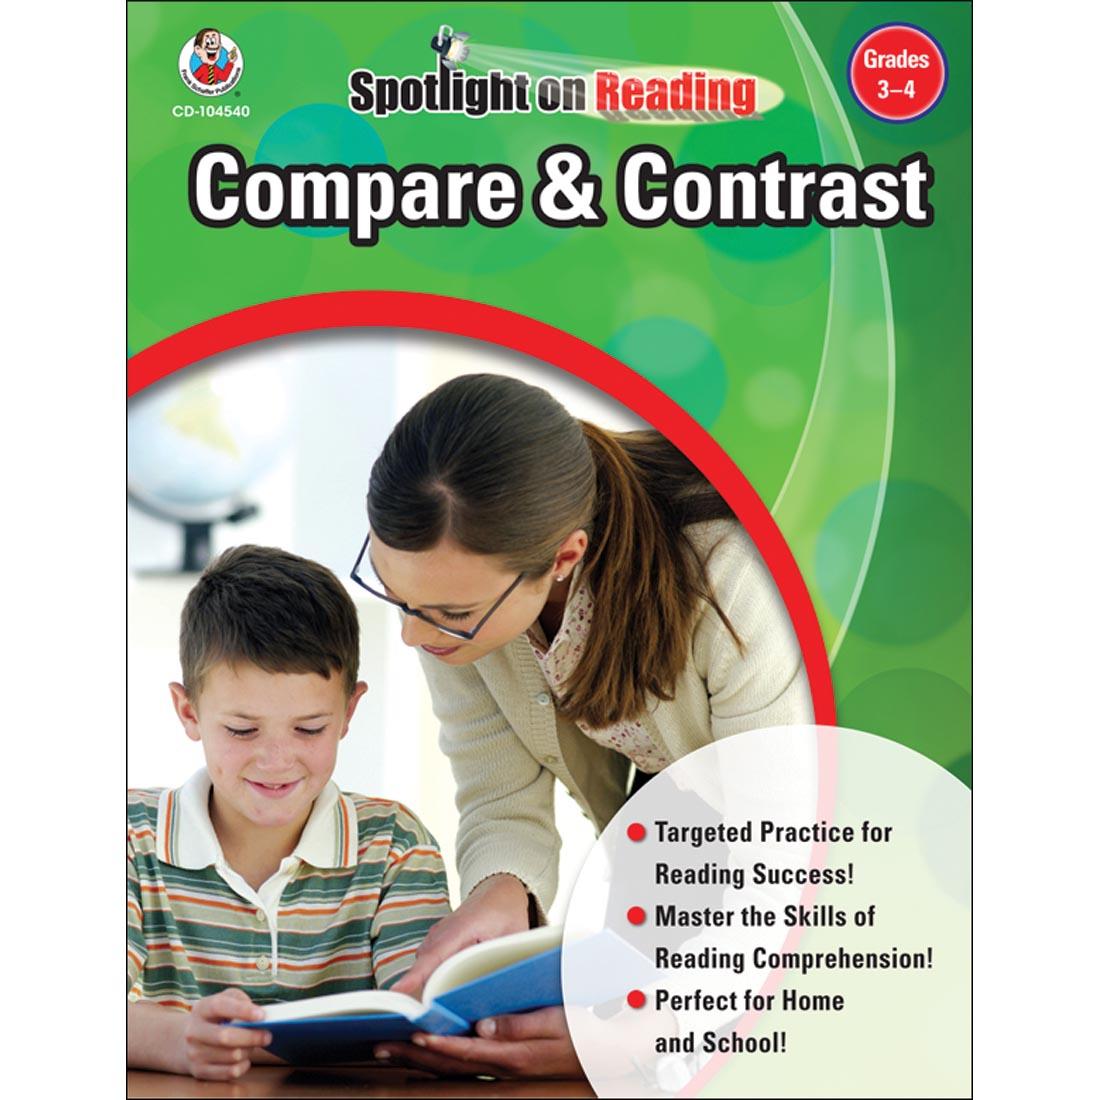 Compare and Contrast Spotlight On Reading by Carson Dellosa Grades 3-4